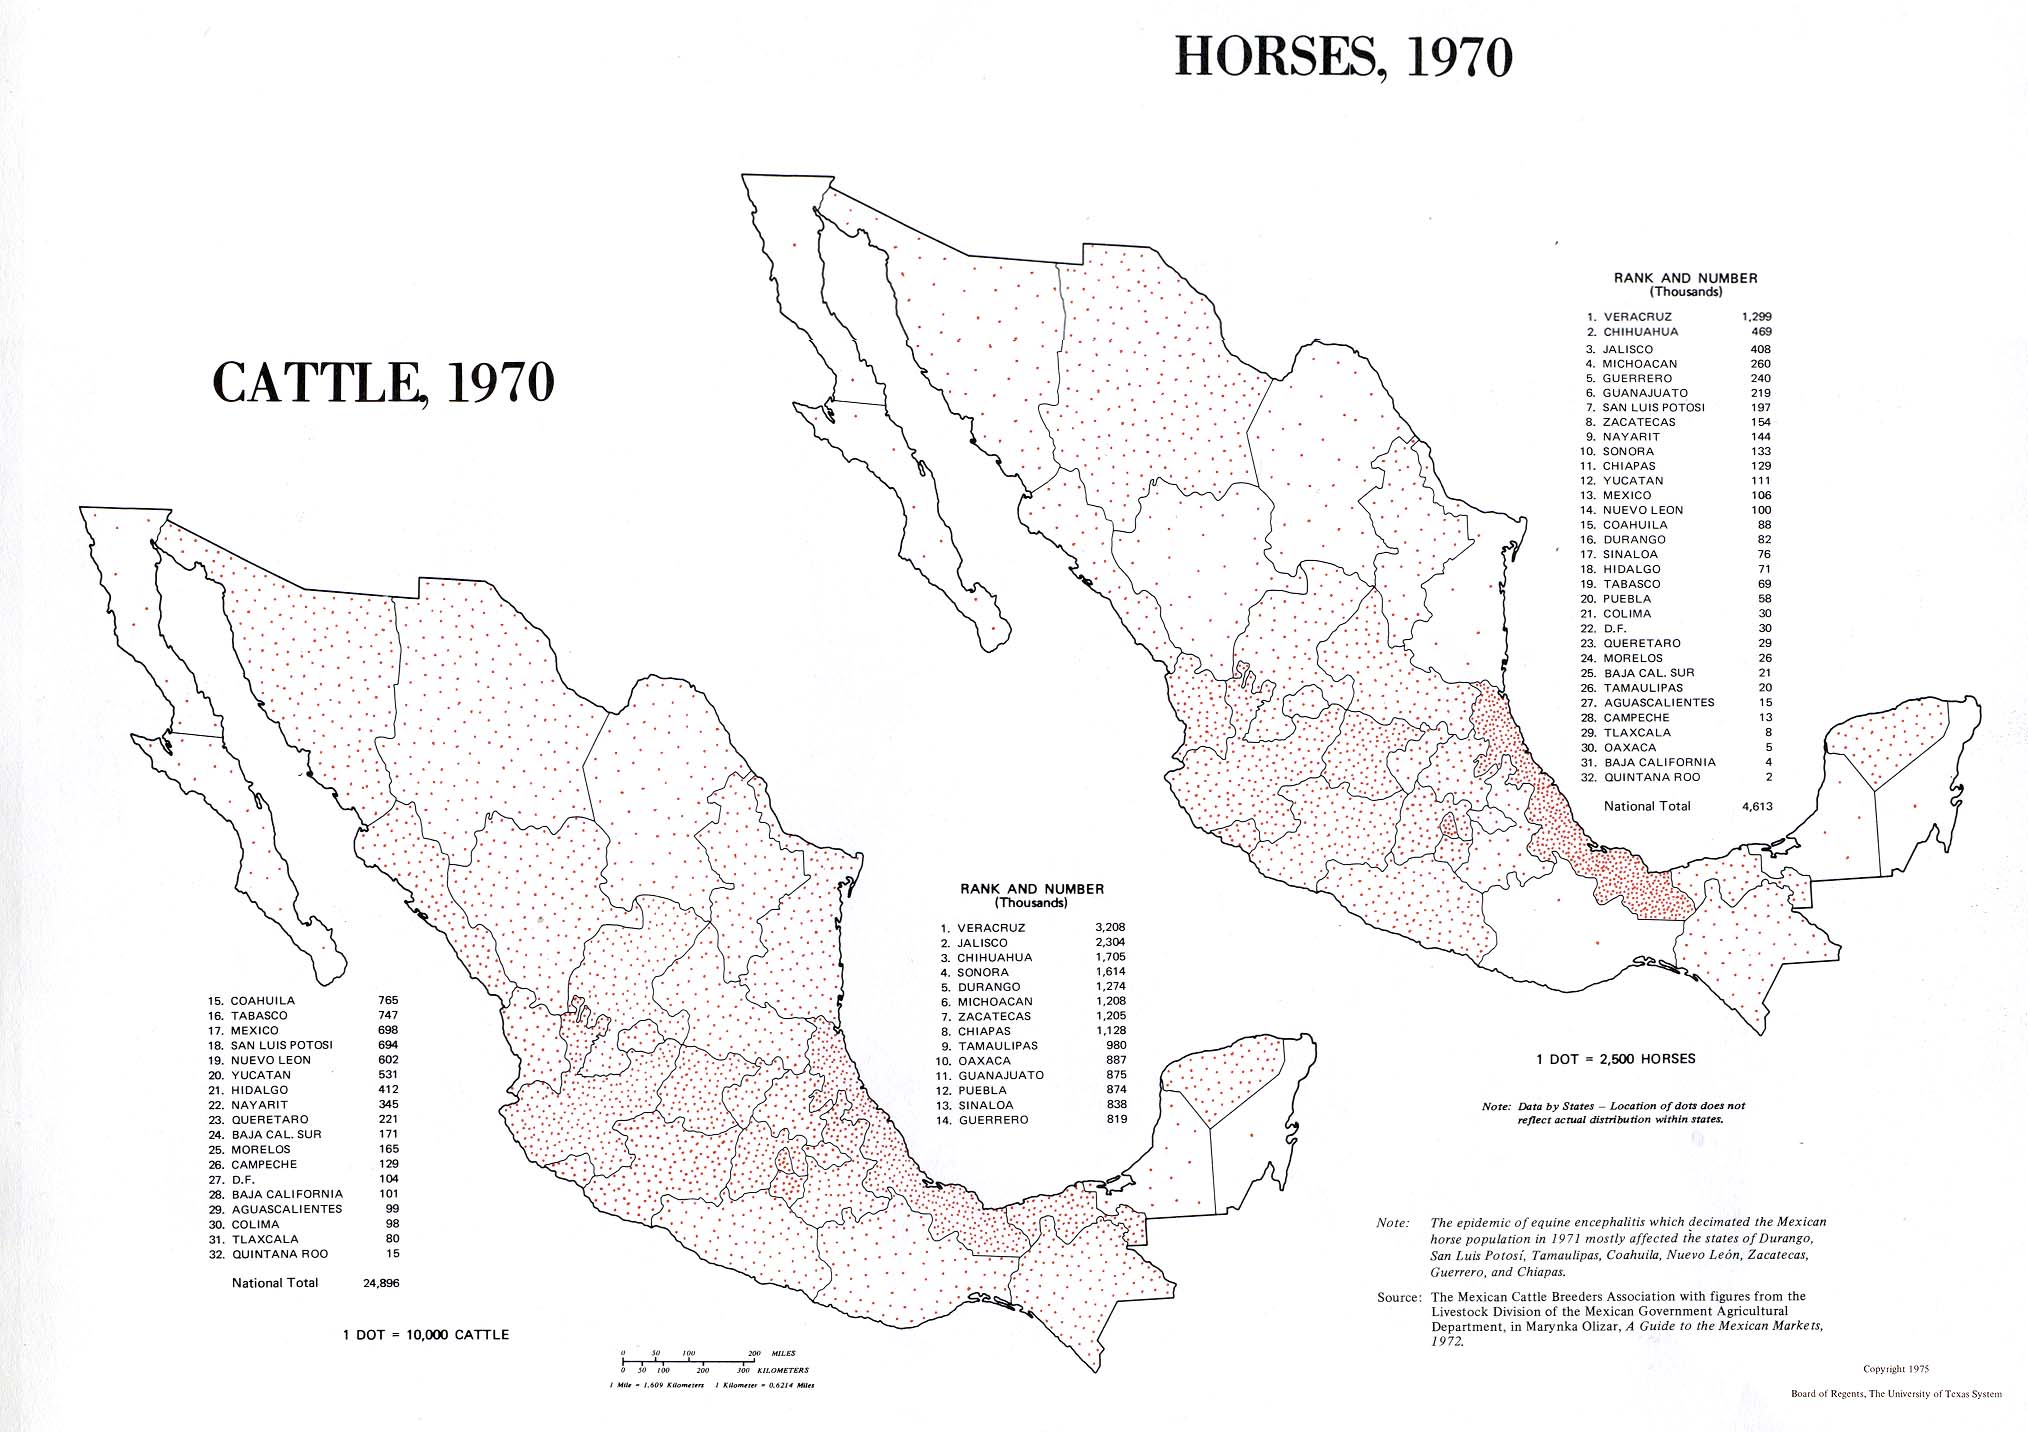 Mapa de Distribución del Ganado y de los Caballos, México 1970